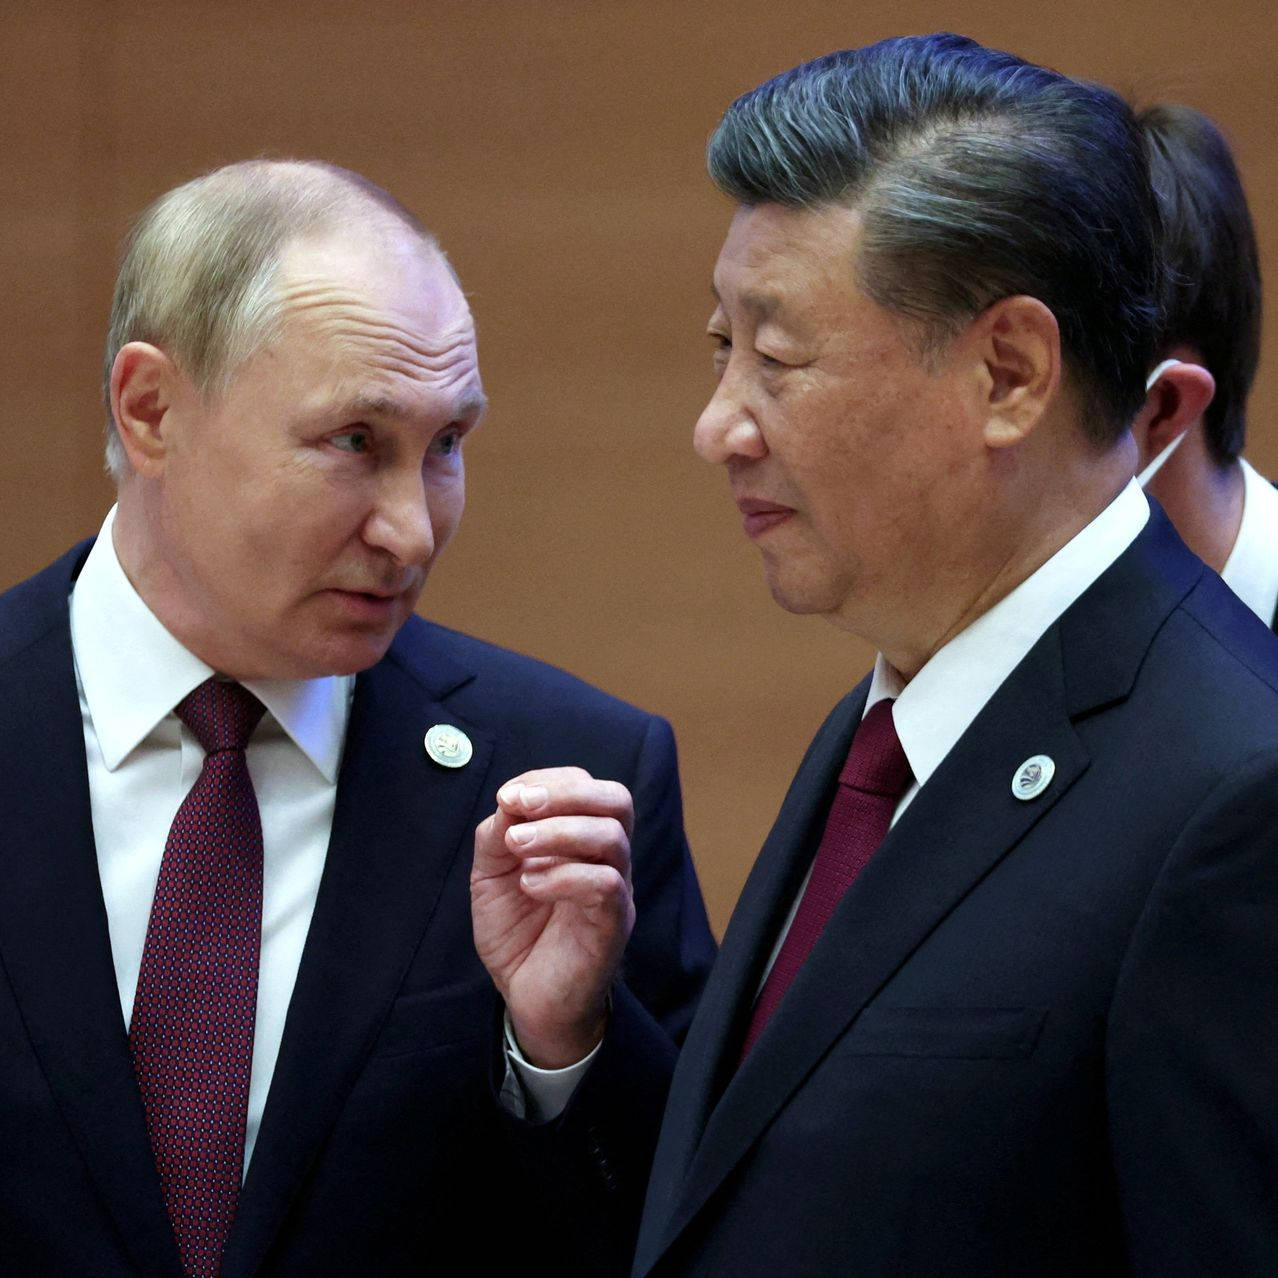 Vladimir Putin Talking To Xi Jinping Wallpaper